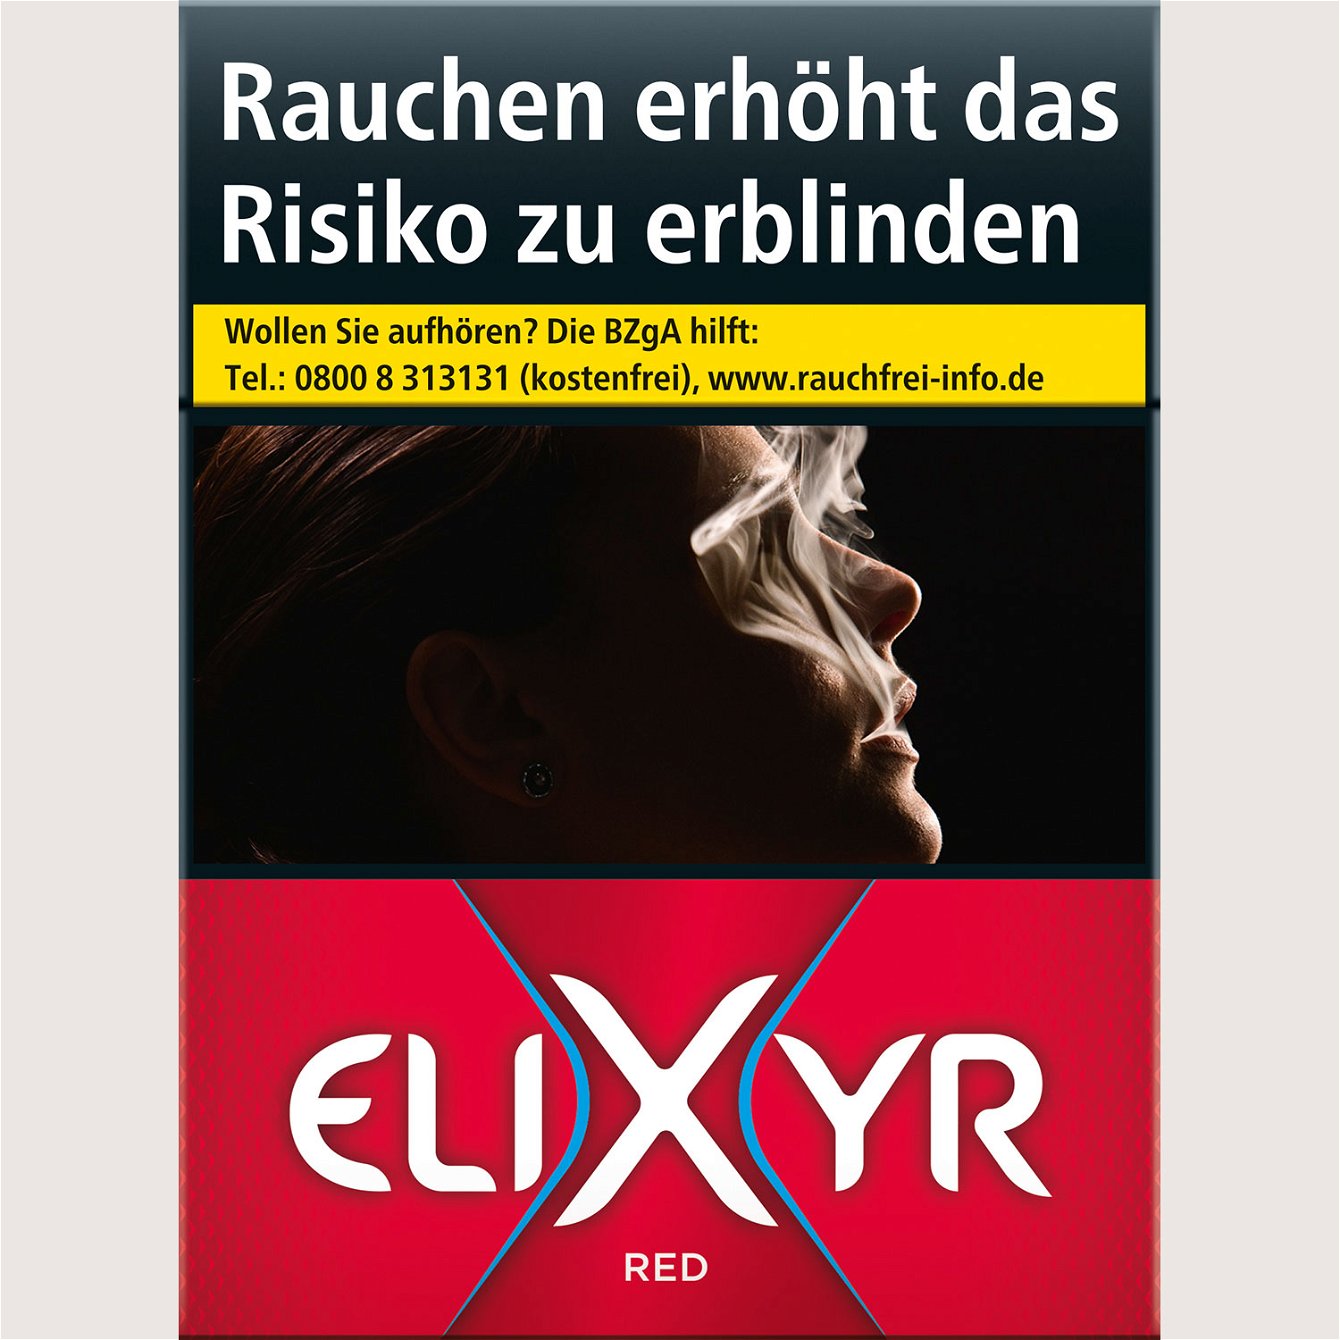 Elixyr Red 9,00 €